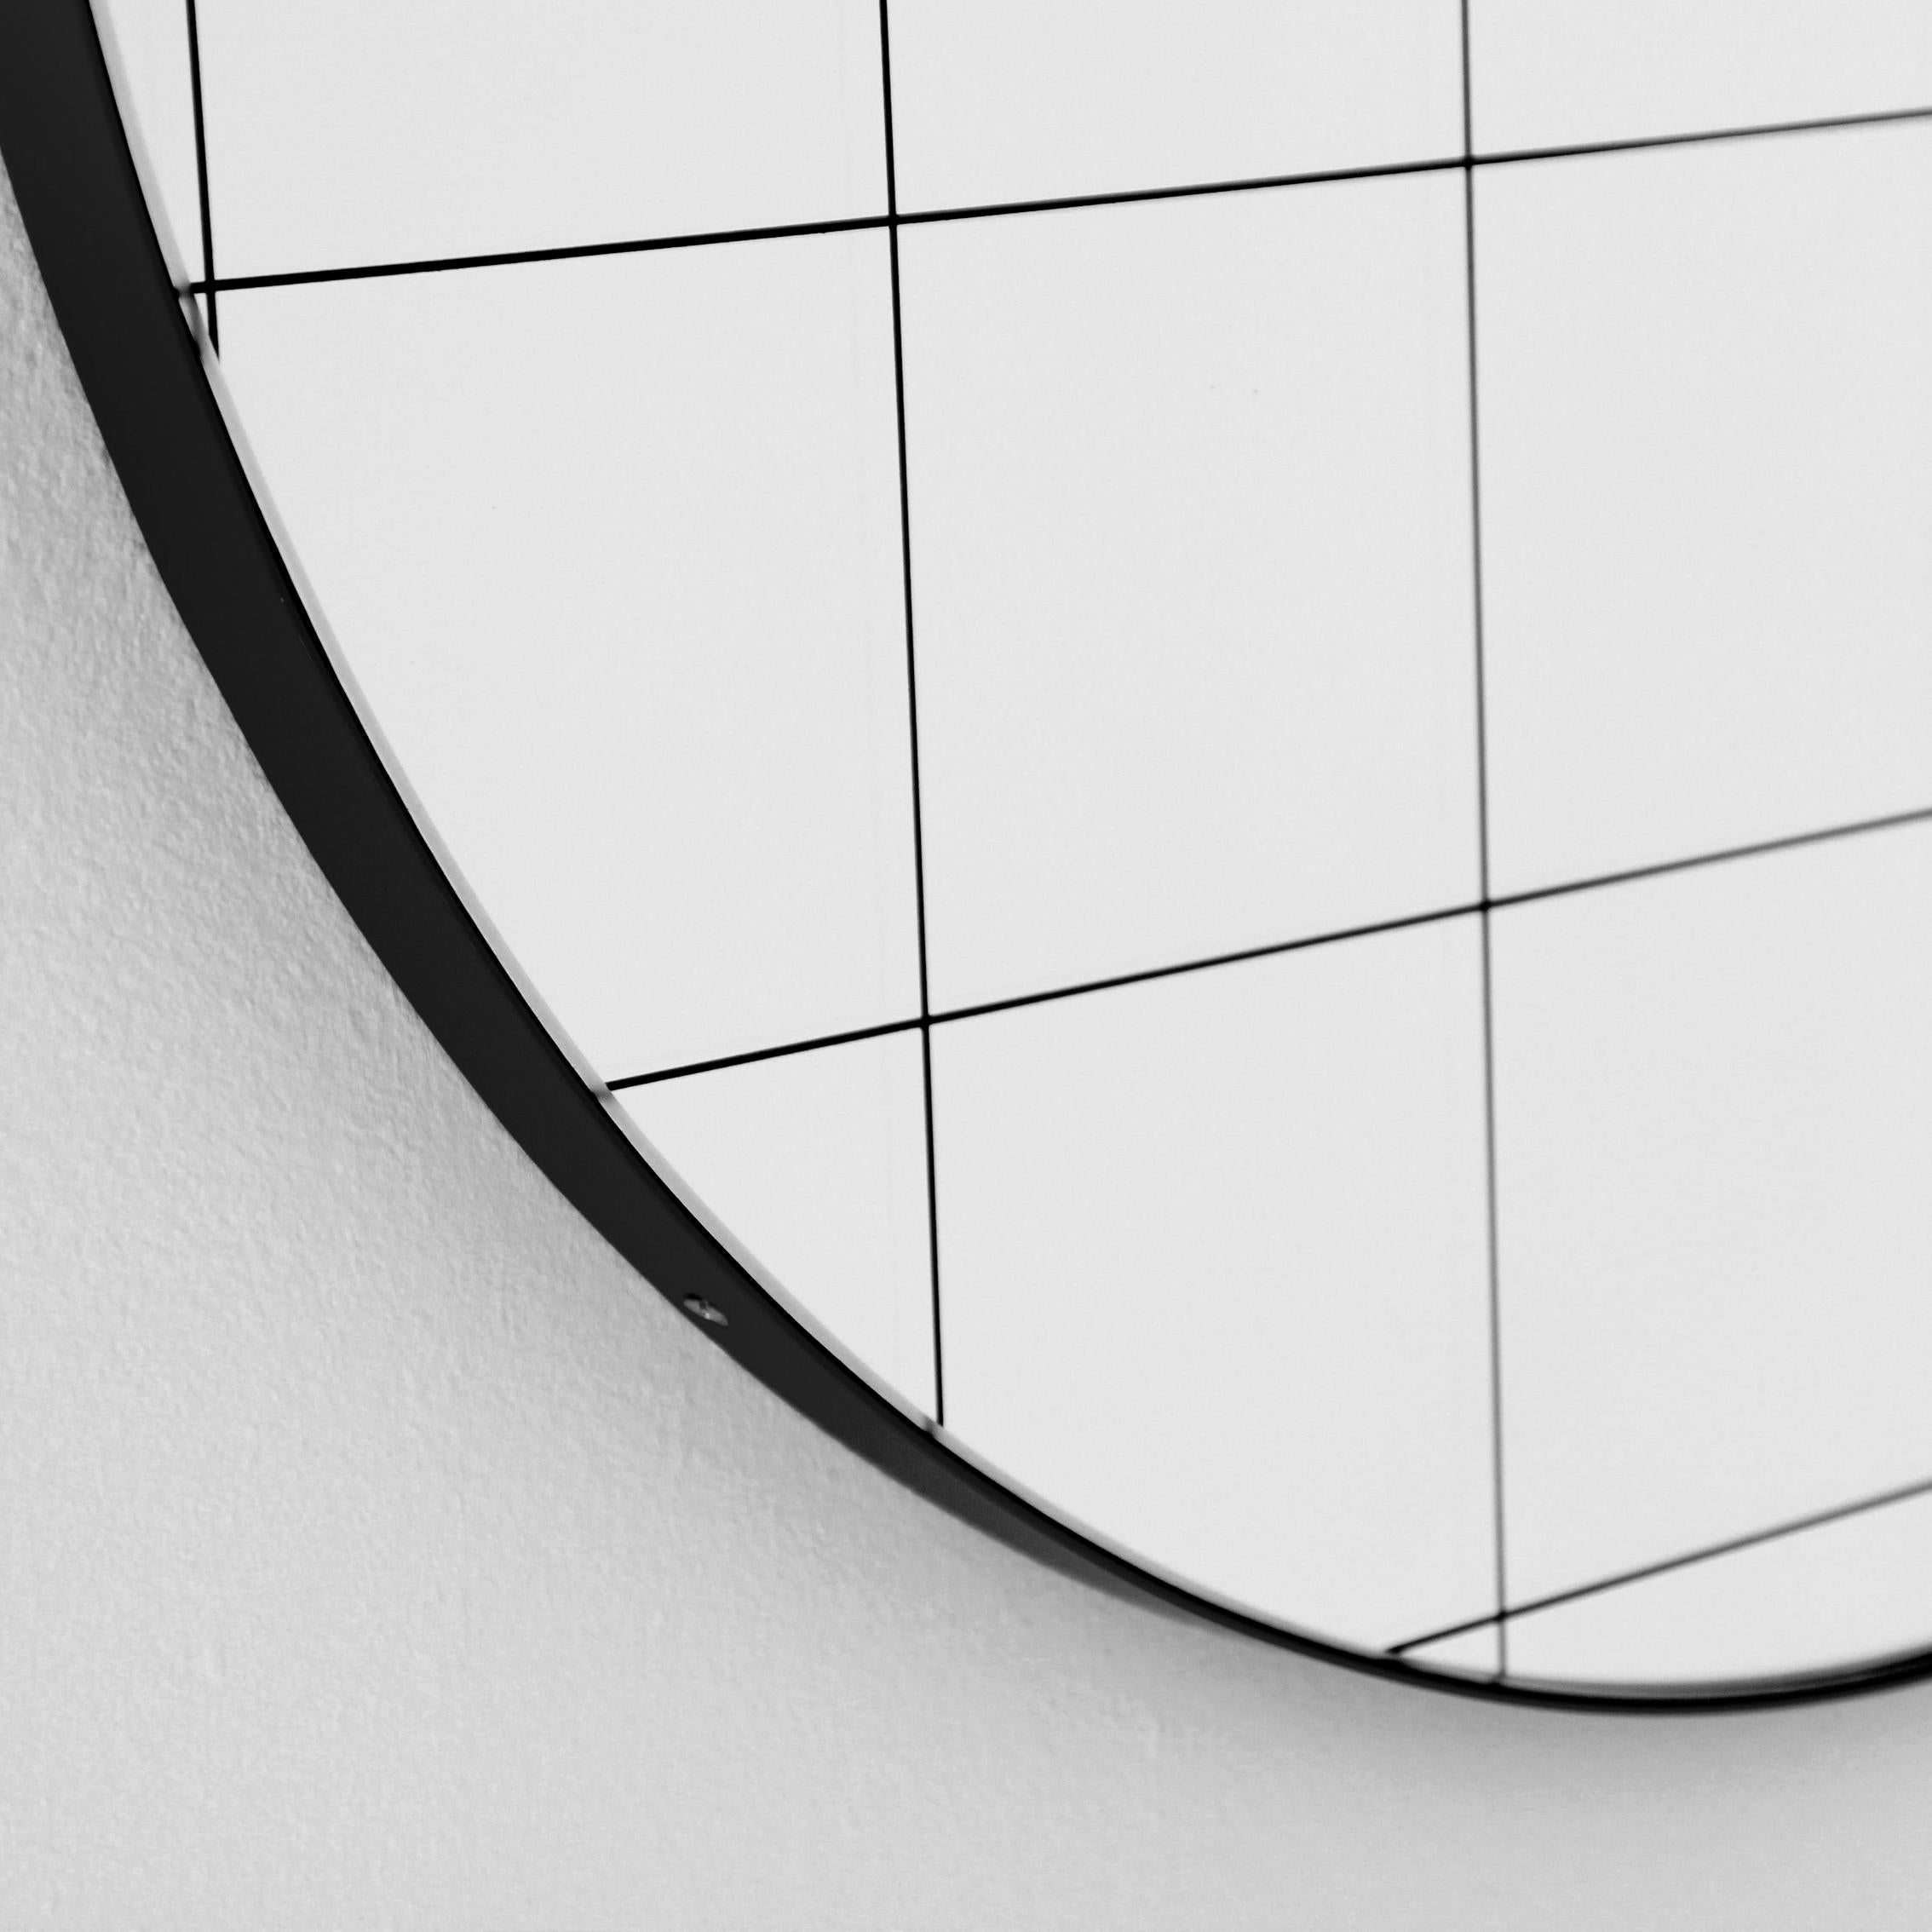 British Orbis Black Grid Round Contemporary Sandblasted Mirror with Black Frame, XL